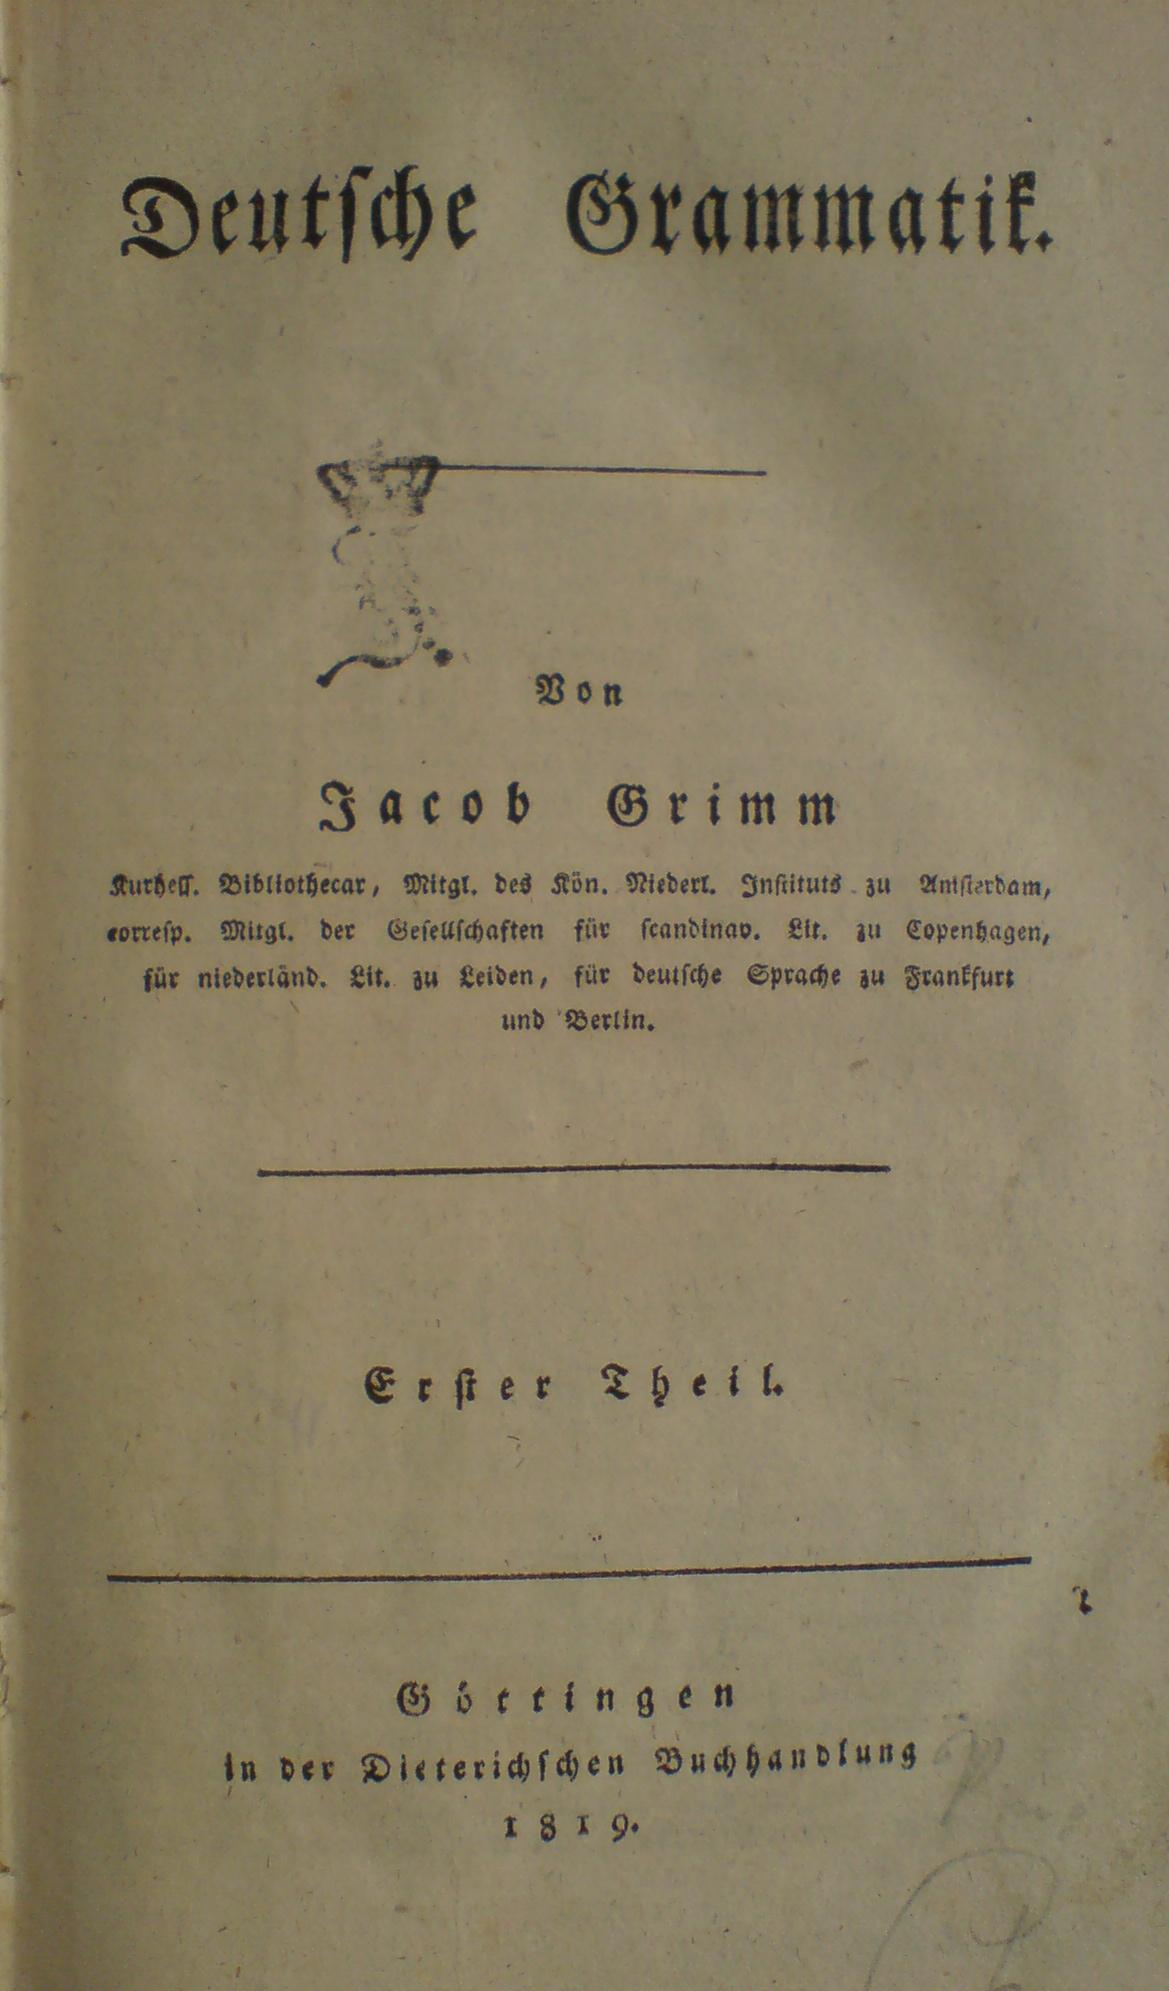 [Jacob Grimm, "Deutsche Grammatik", 1819]